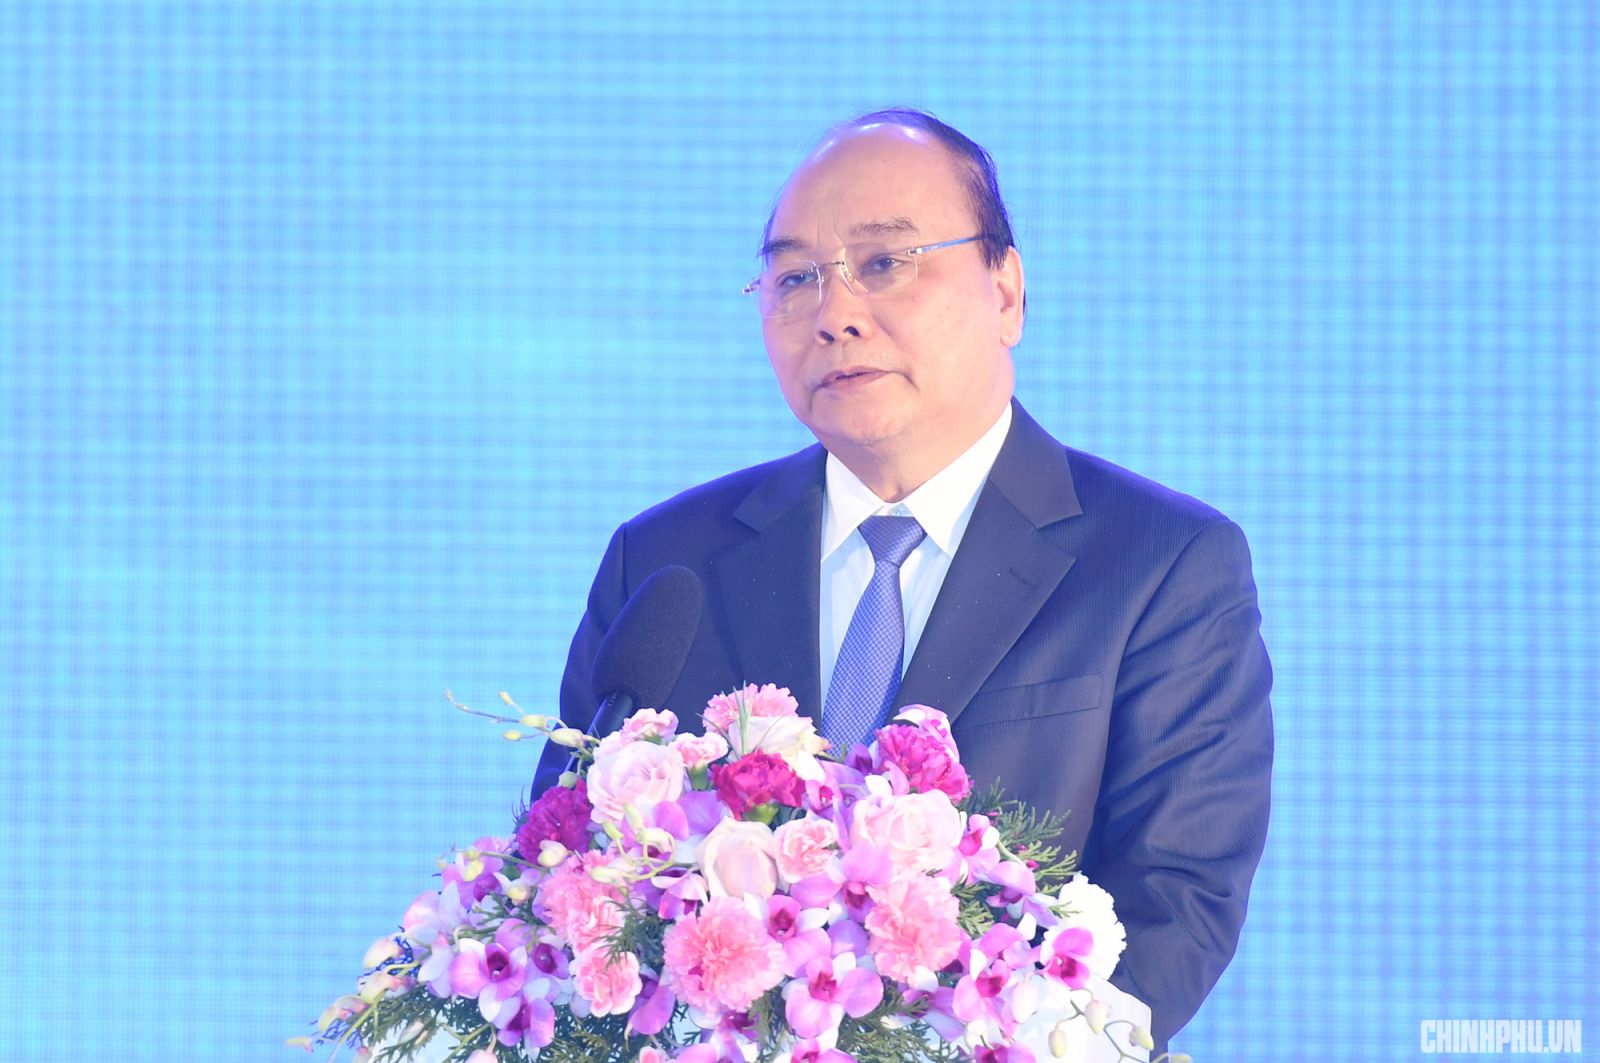 Thủ tướng Nguyễn Xuân Phúc phát biểu tại buổi lễ. Ảnh: VGP/Quang Hiếu